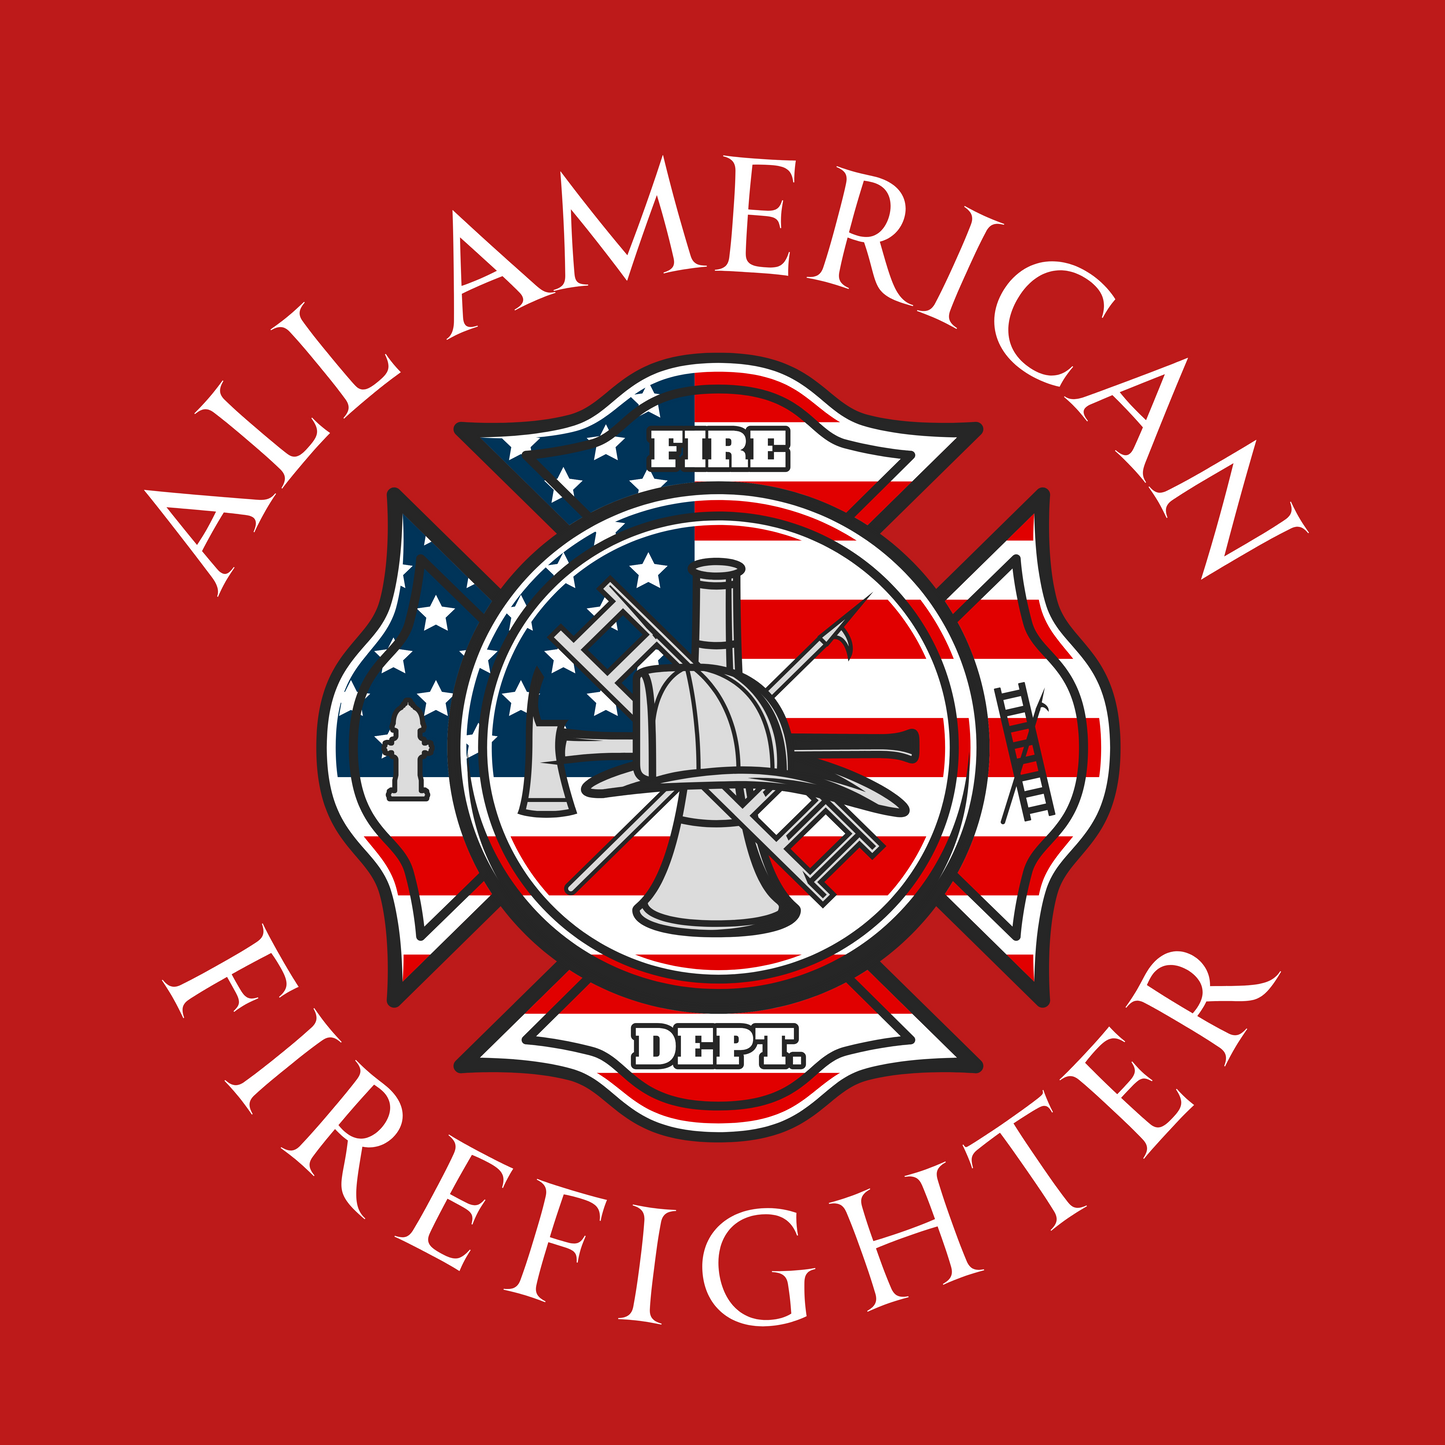 All American Firefighter Shirt, Firefighter shirt, Patriotic Firefighter Shirt